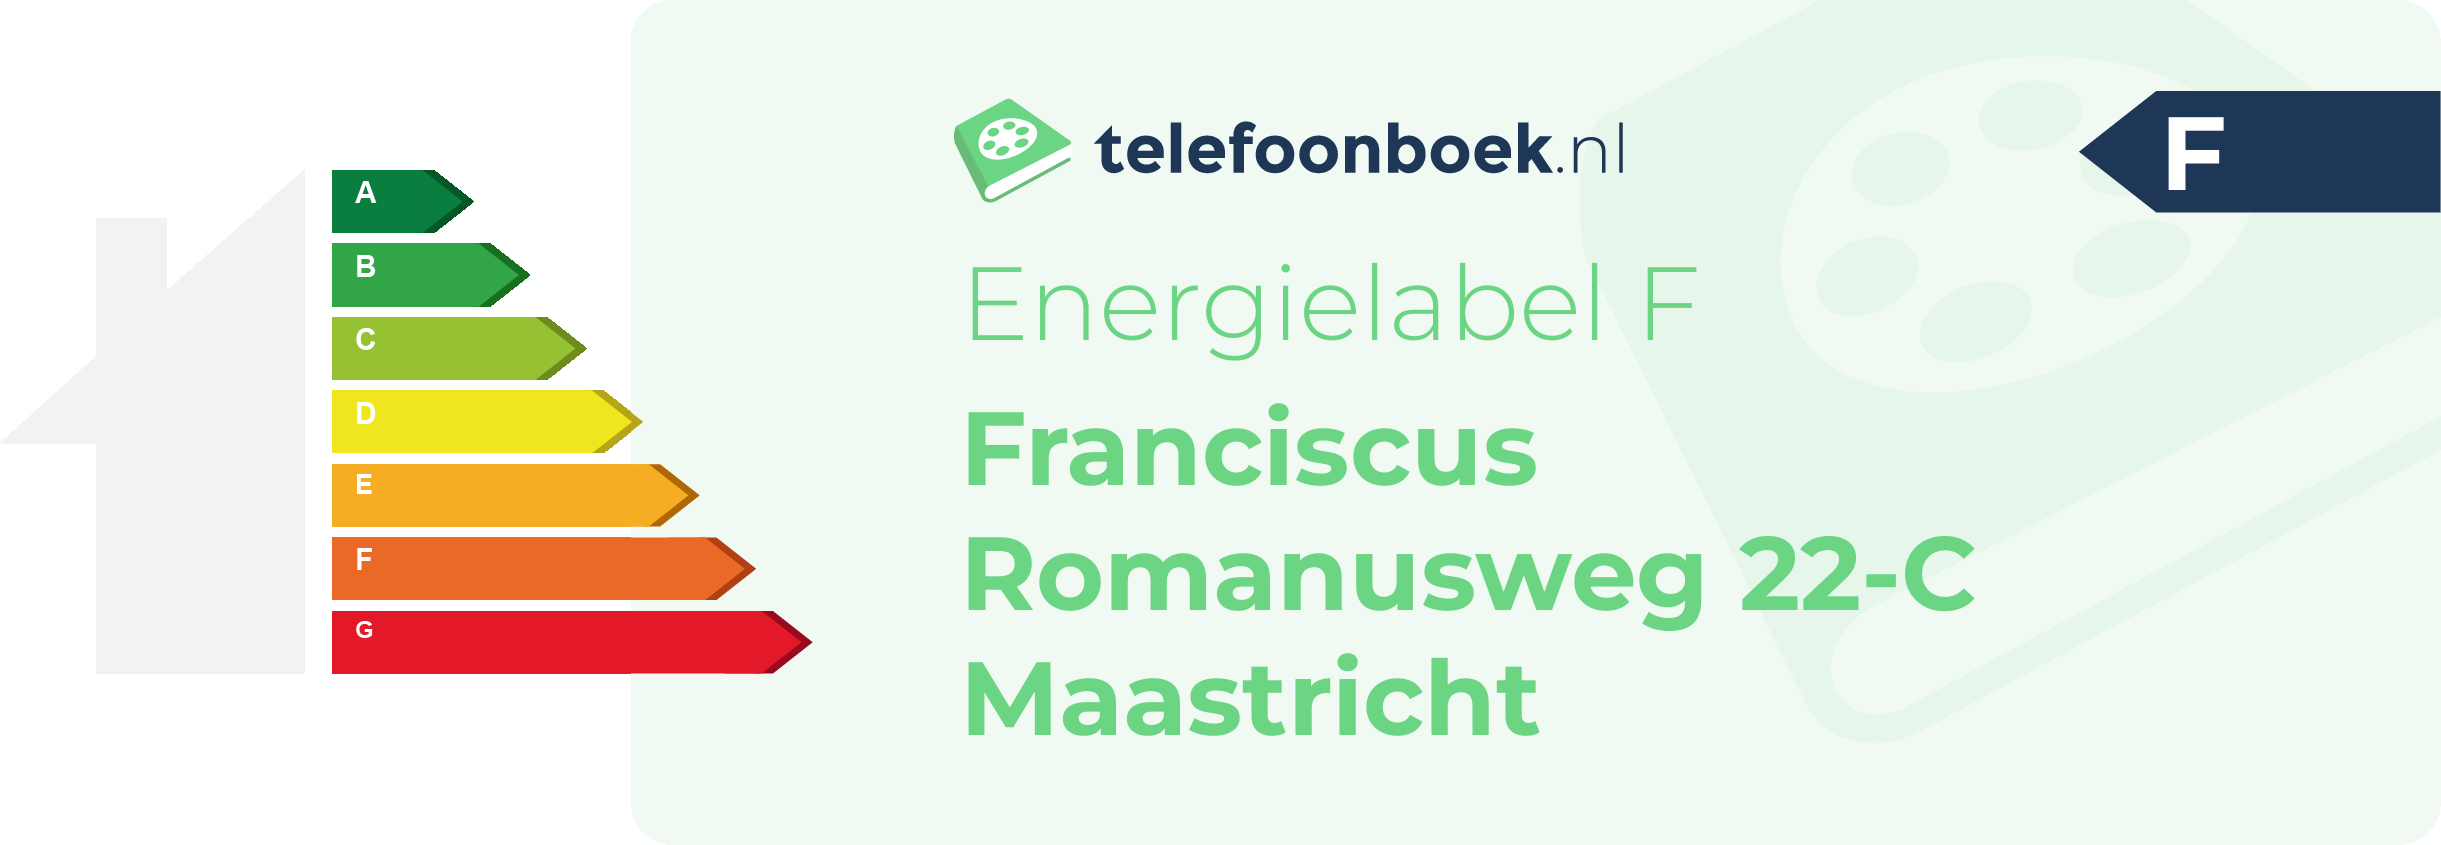 Energielabel Franciscus Romanusweg 22-C Maastricht